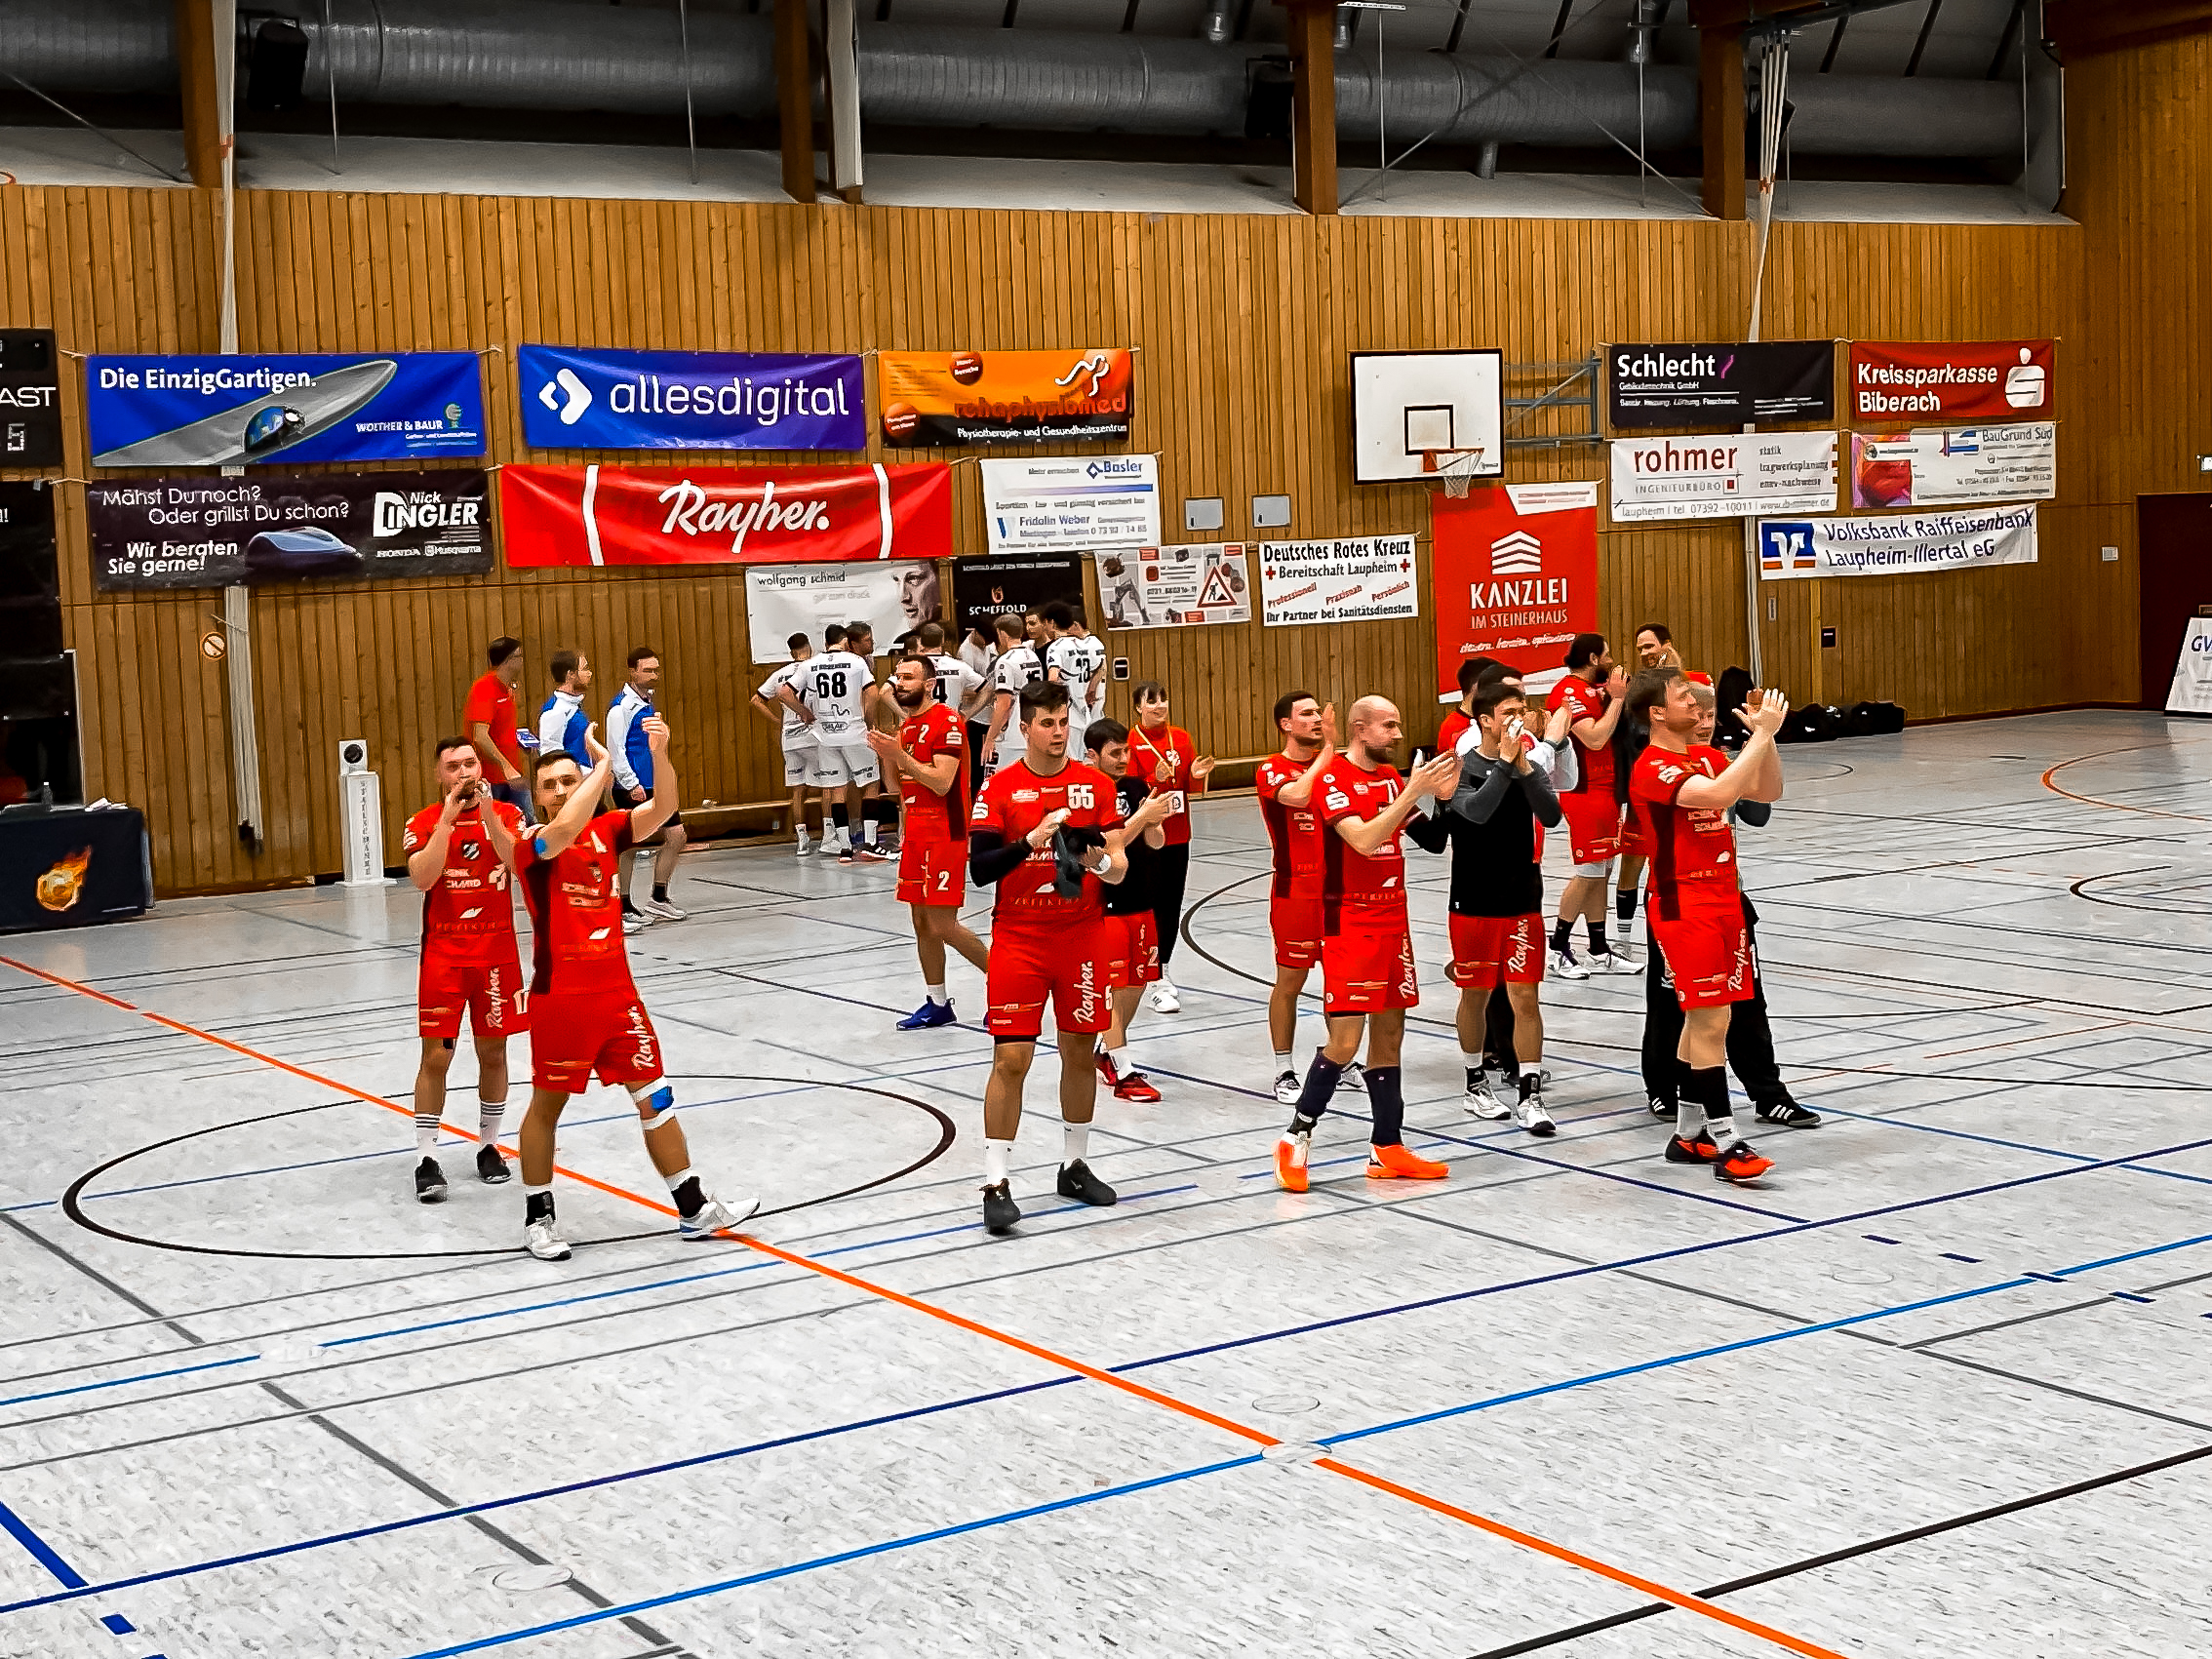 Spieler des HRW Laupheim in roten Trikots jubeln und applaudieren in einer Sporthalle nach einem Handballspiel. Im Hintergrund stehen weitere Spieler und sind Werbebanner an der Holzwand angebracht.